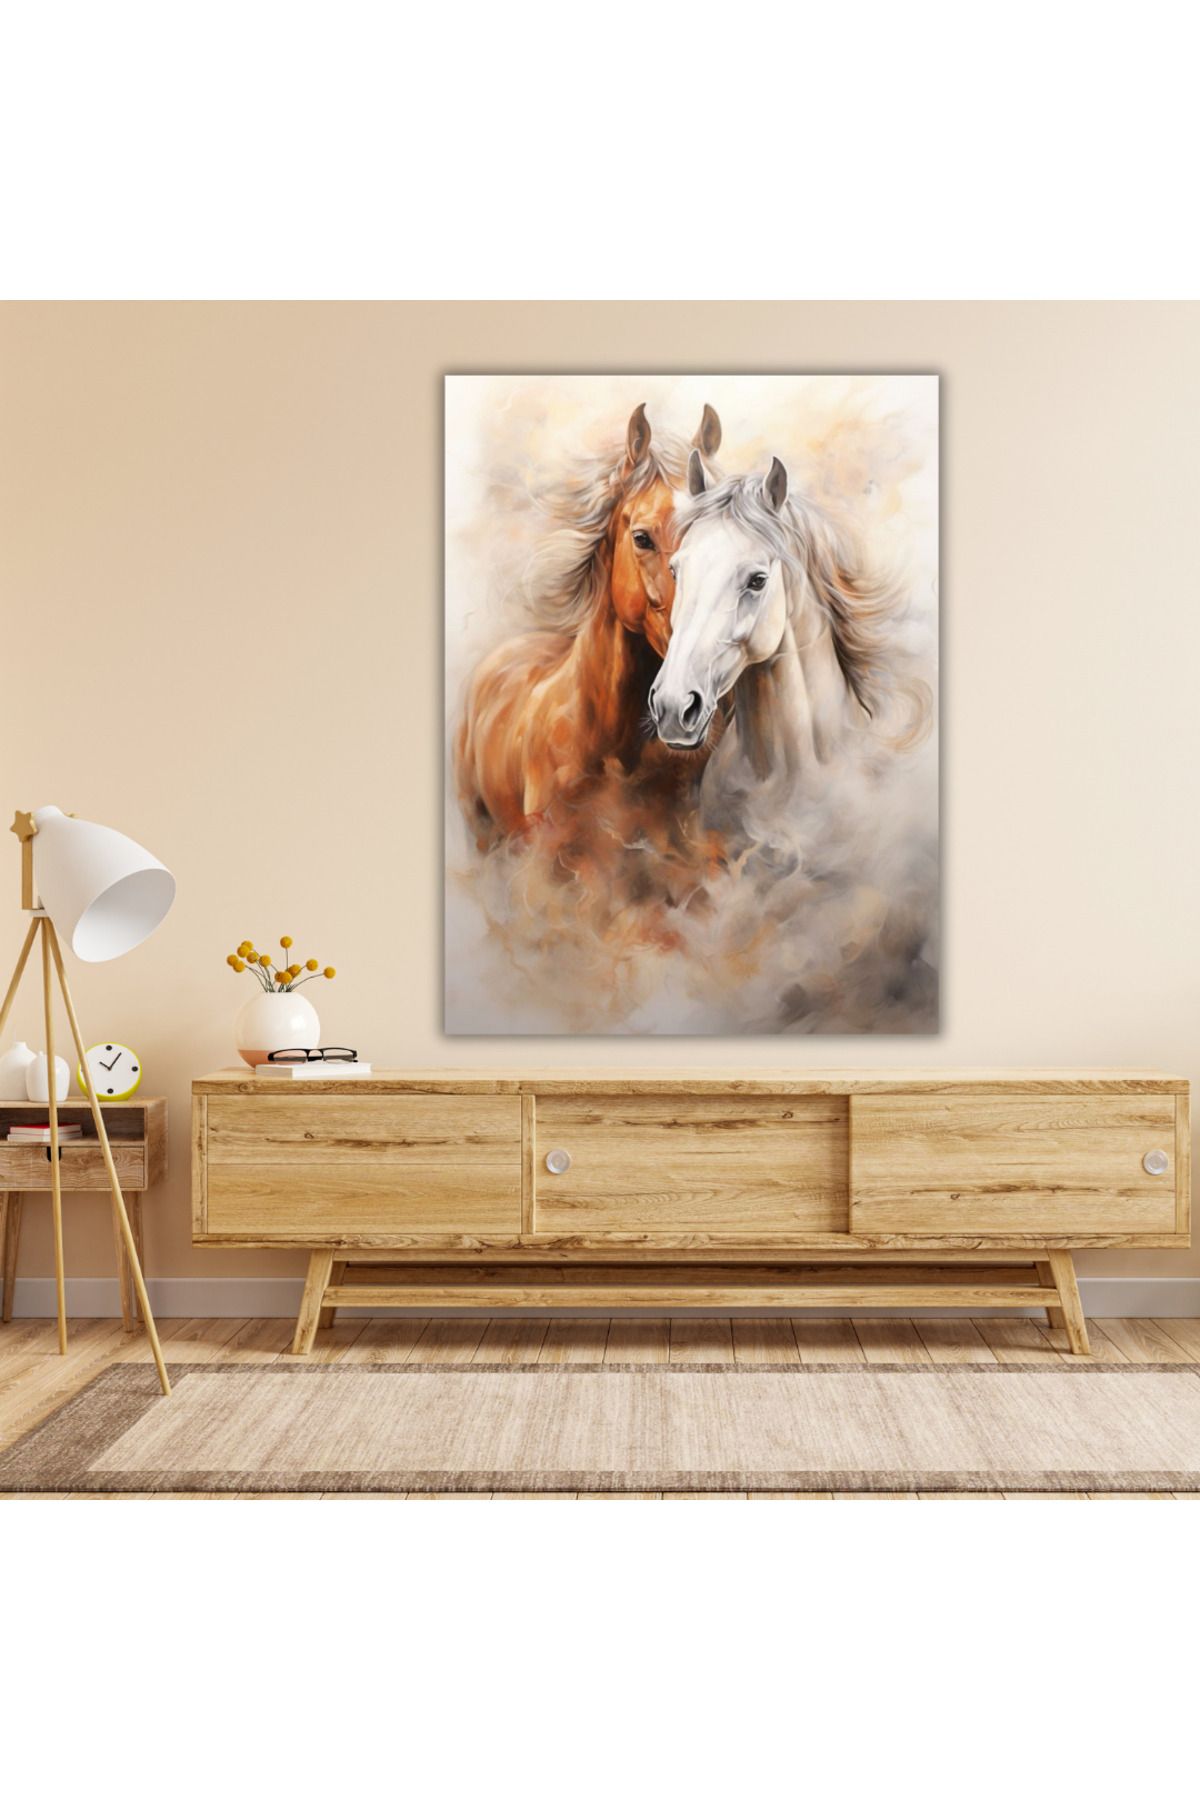 LİLYHOBBYLAND Renkli Baskılı Sayılarla Boyama Hobi Seti (Çerçeveli) 40x50 cm: Asil Atlar